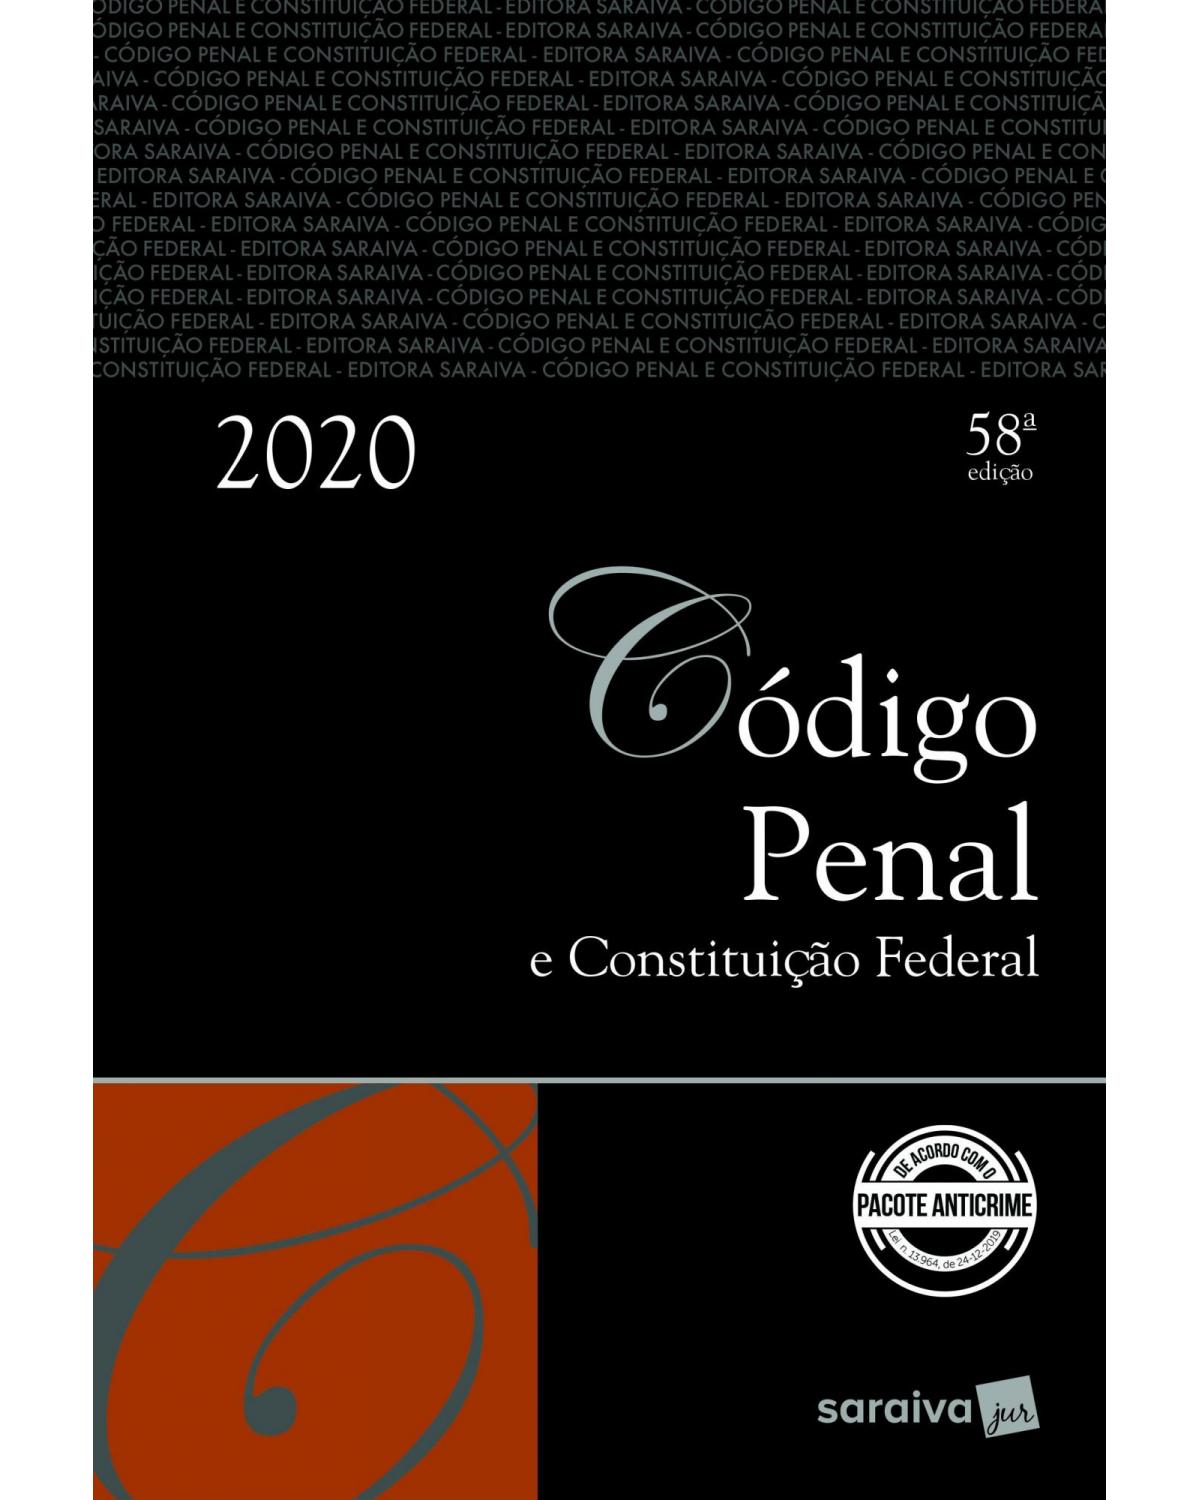 Código penal e Constituição Federal - 58ª Edição | 2020